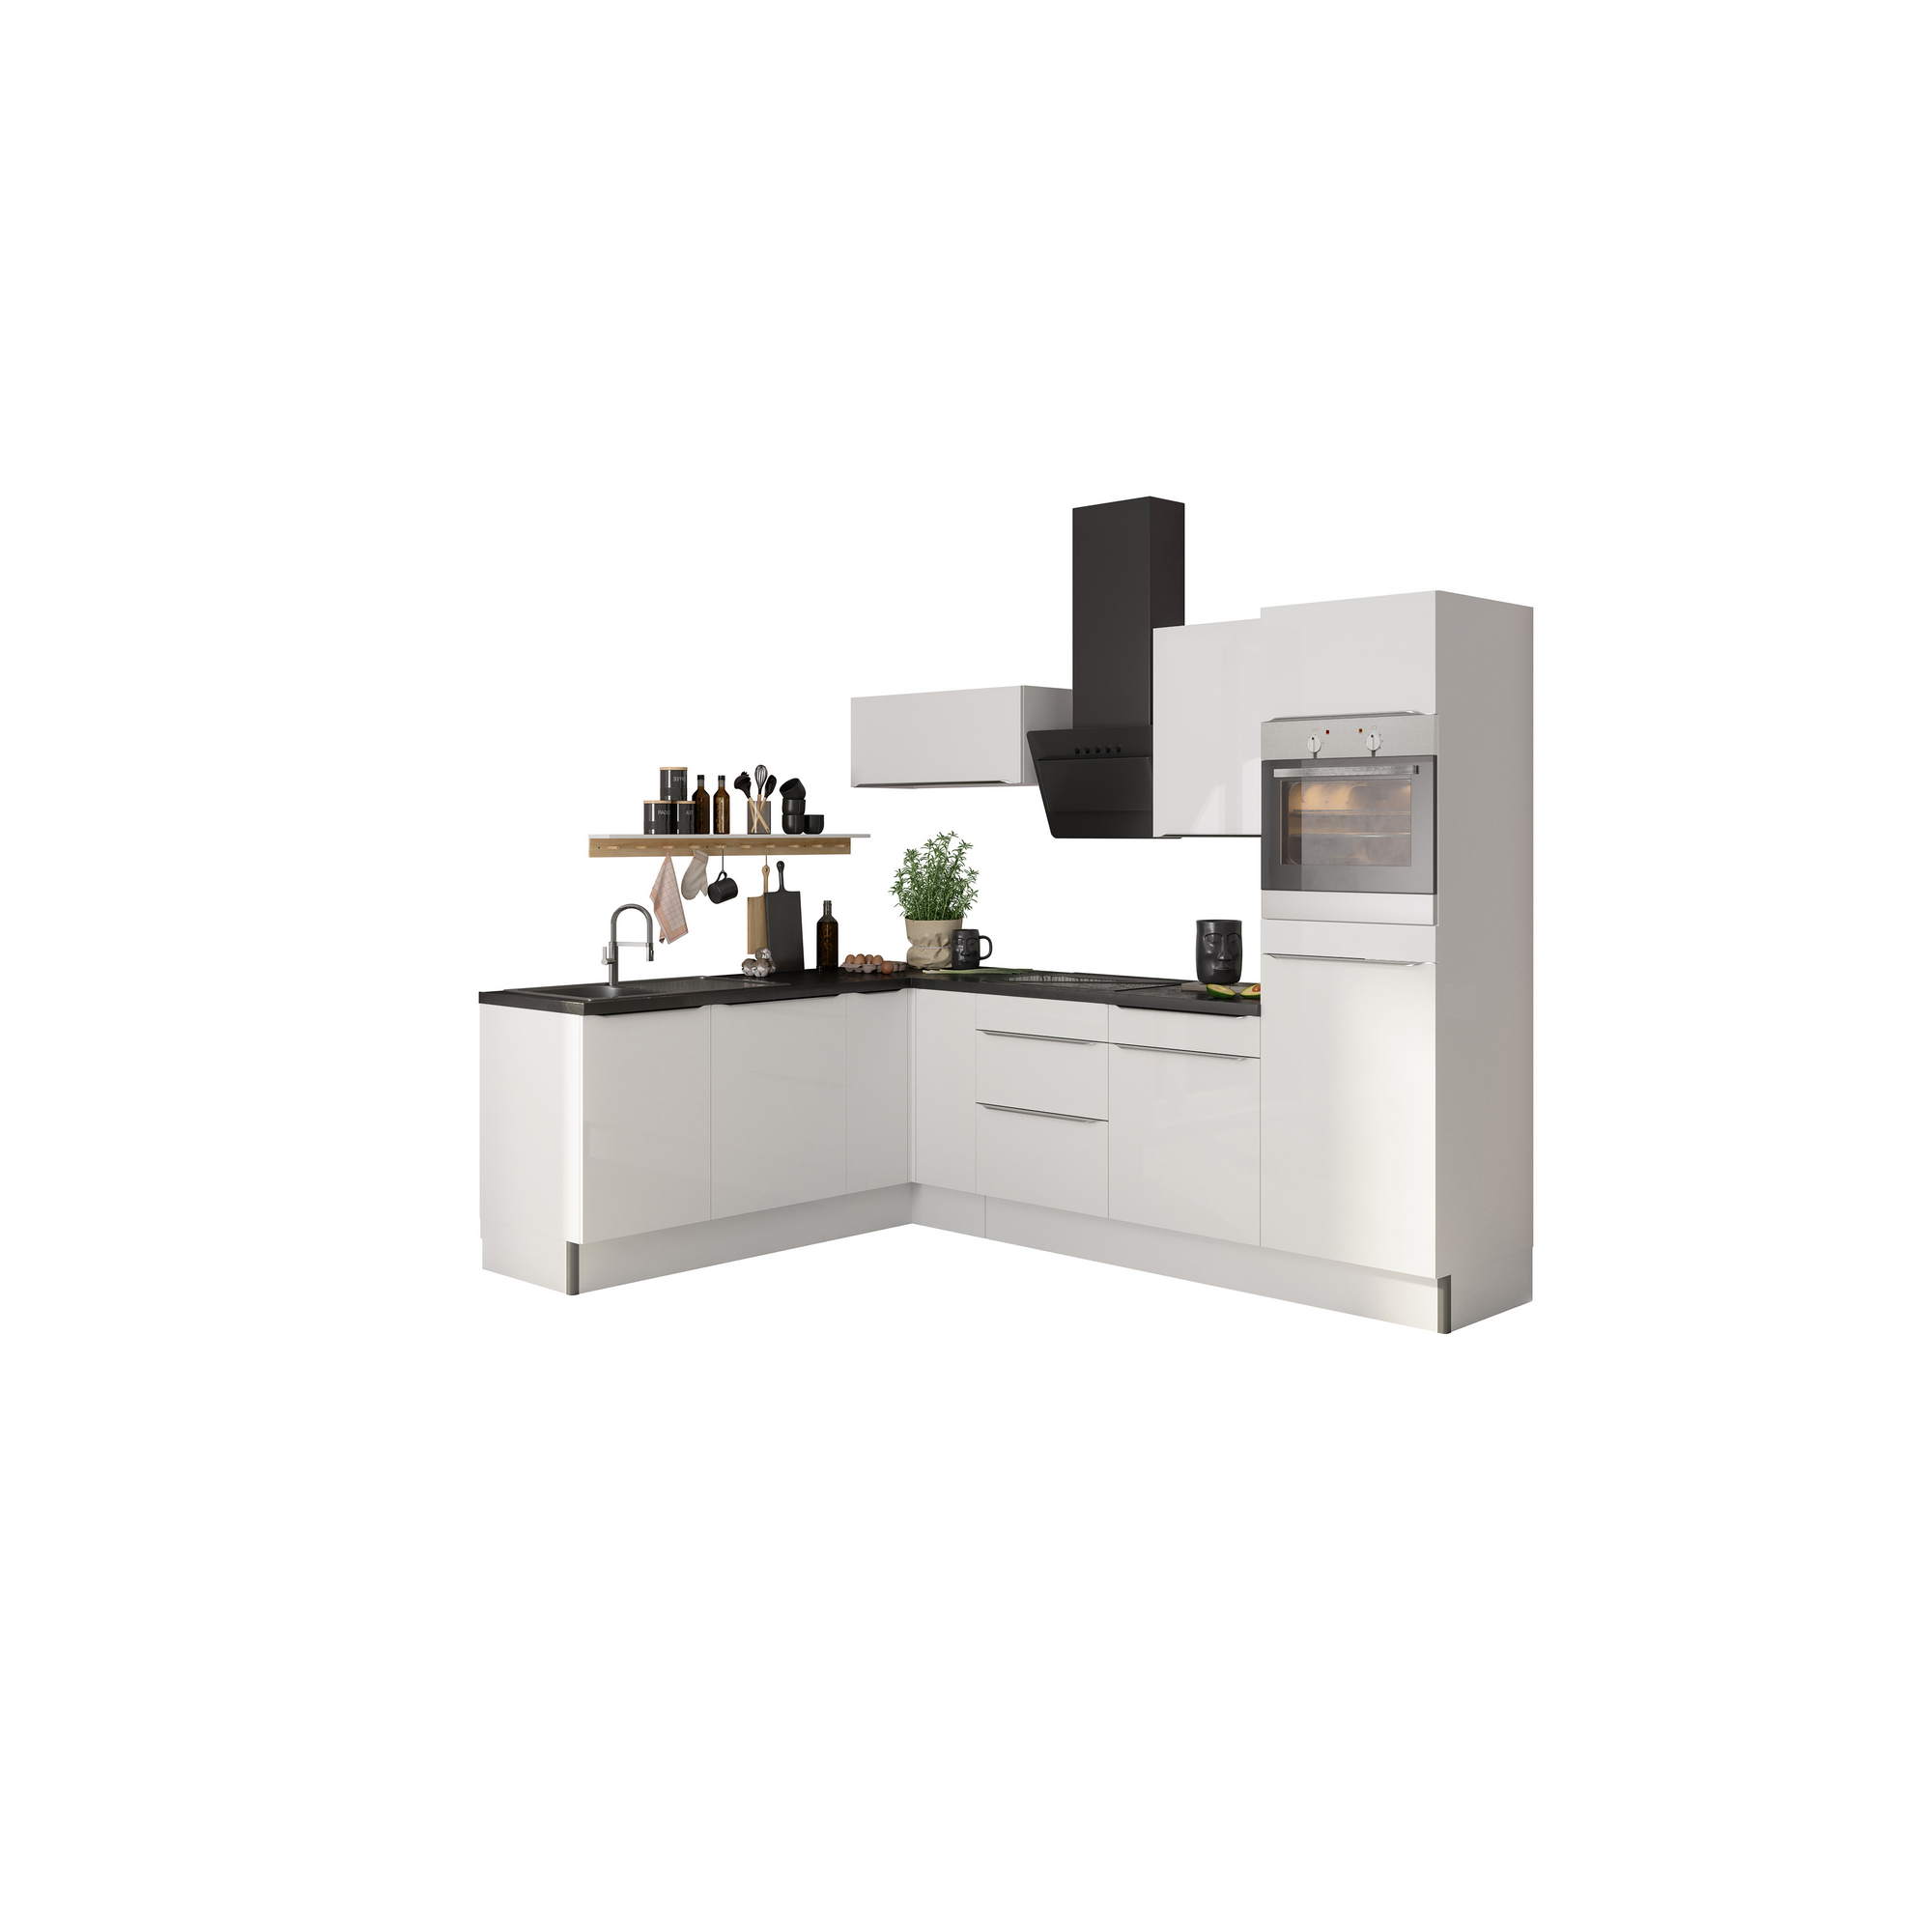 Winkelküche mit E-Geräten 'OPTIkoncept Arvid986' weiß 270 cm + product picture